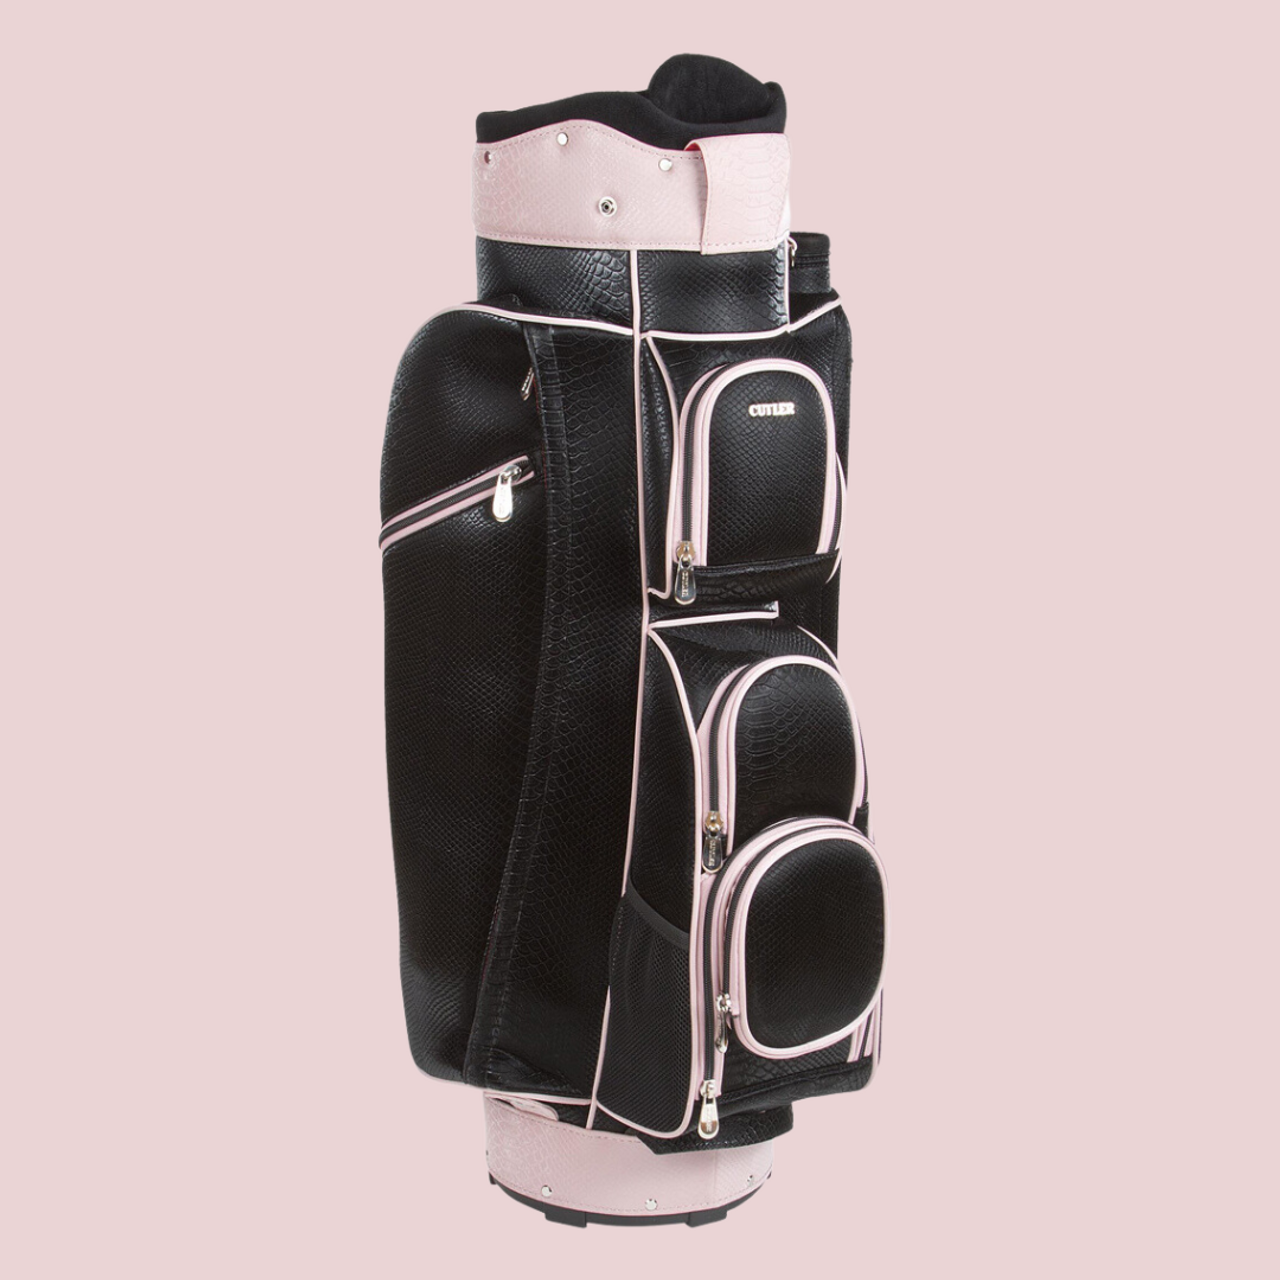 Cutler Coco Golf Bag